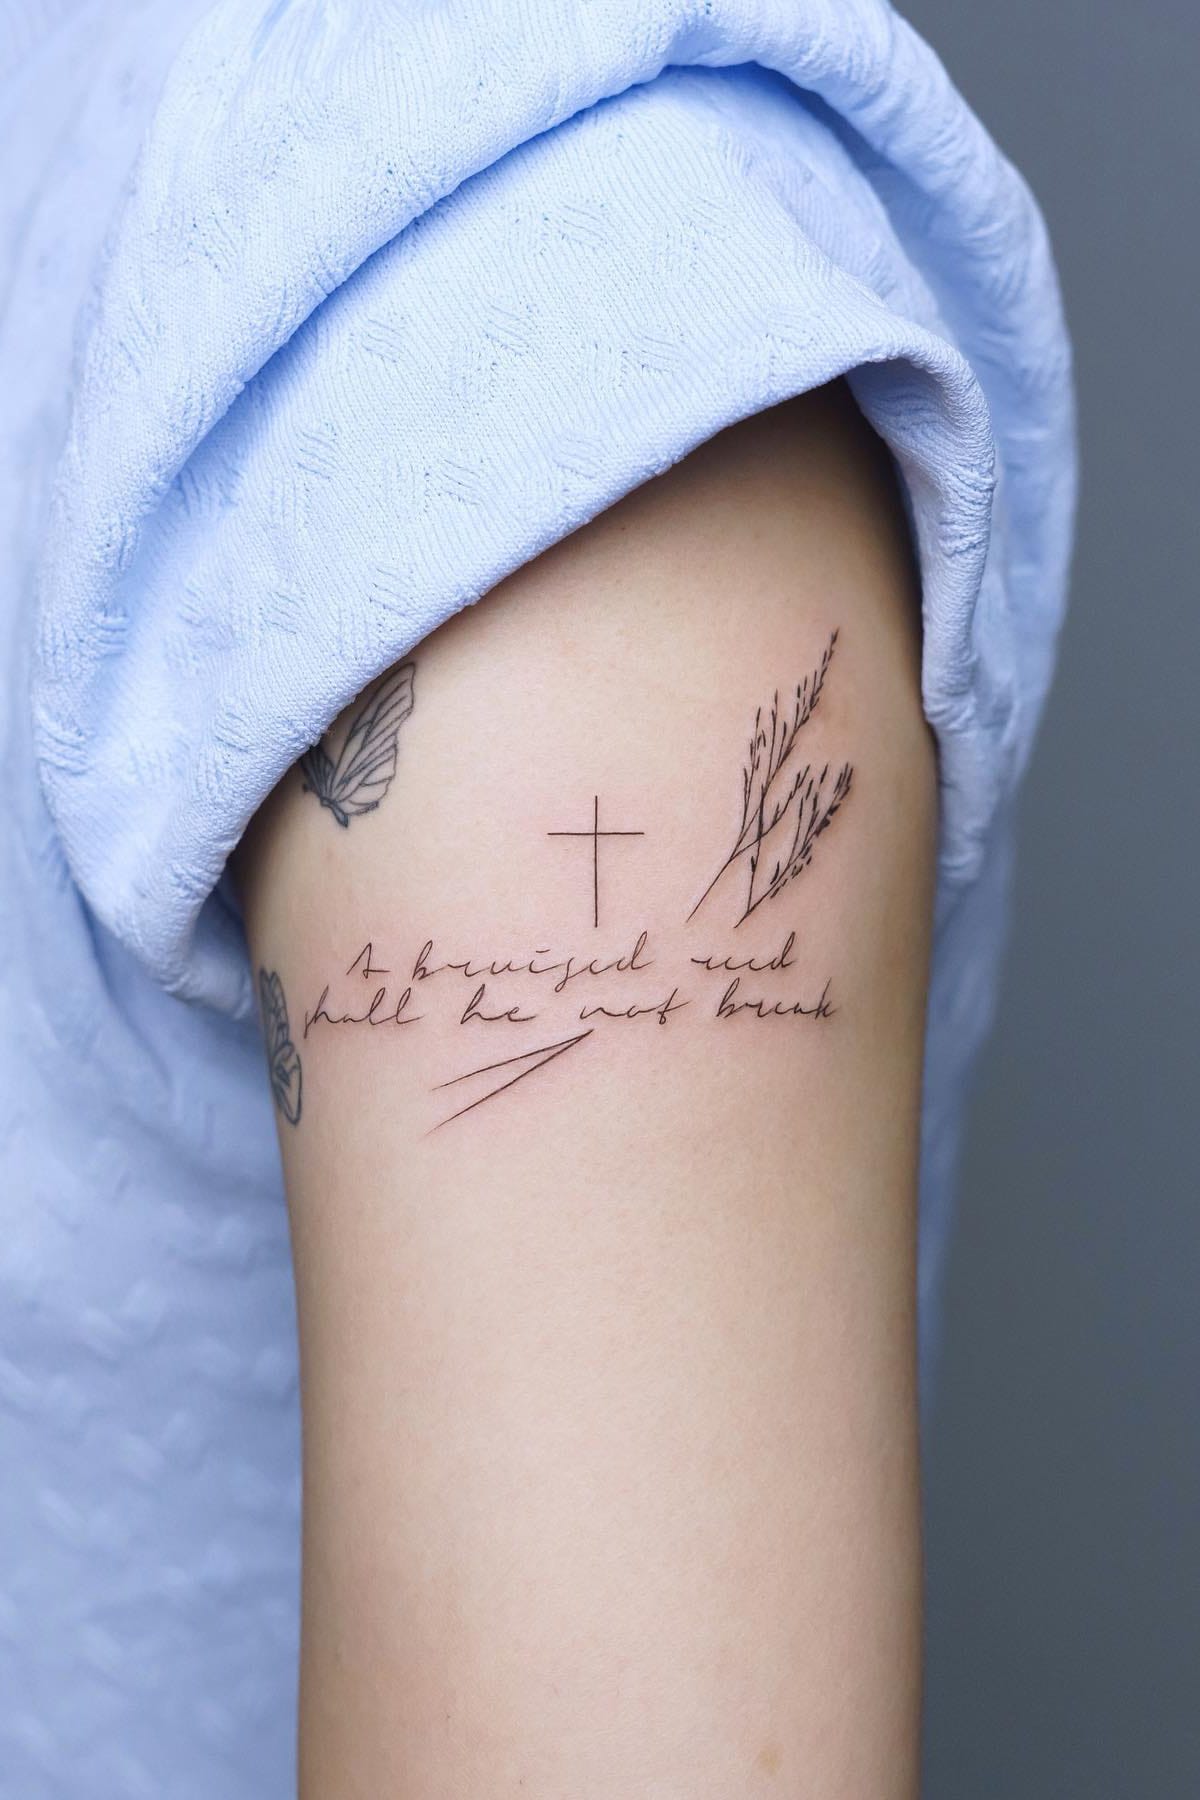 Small cross tattoo on arm